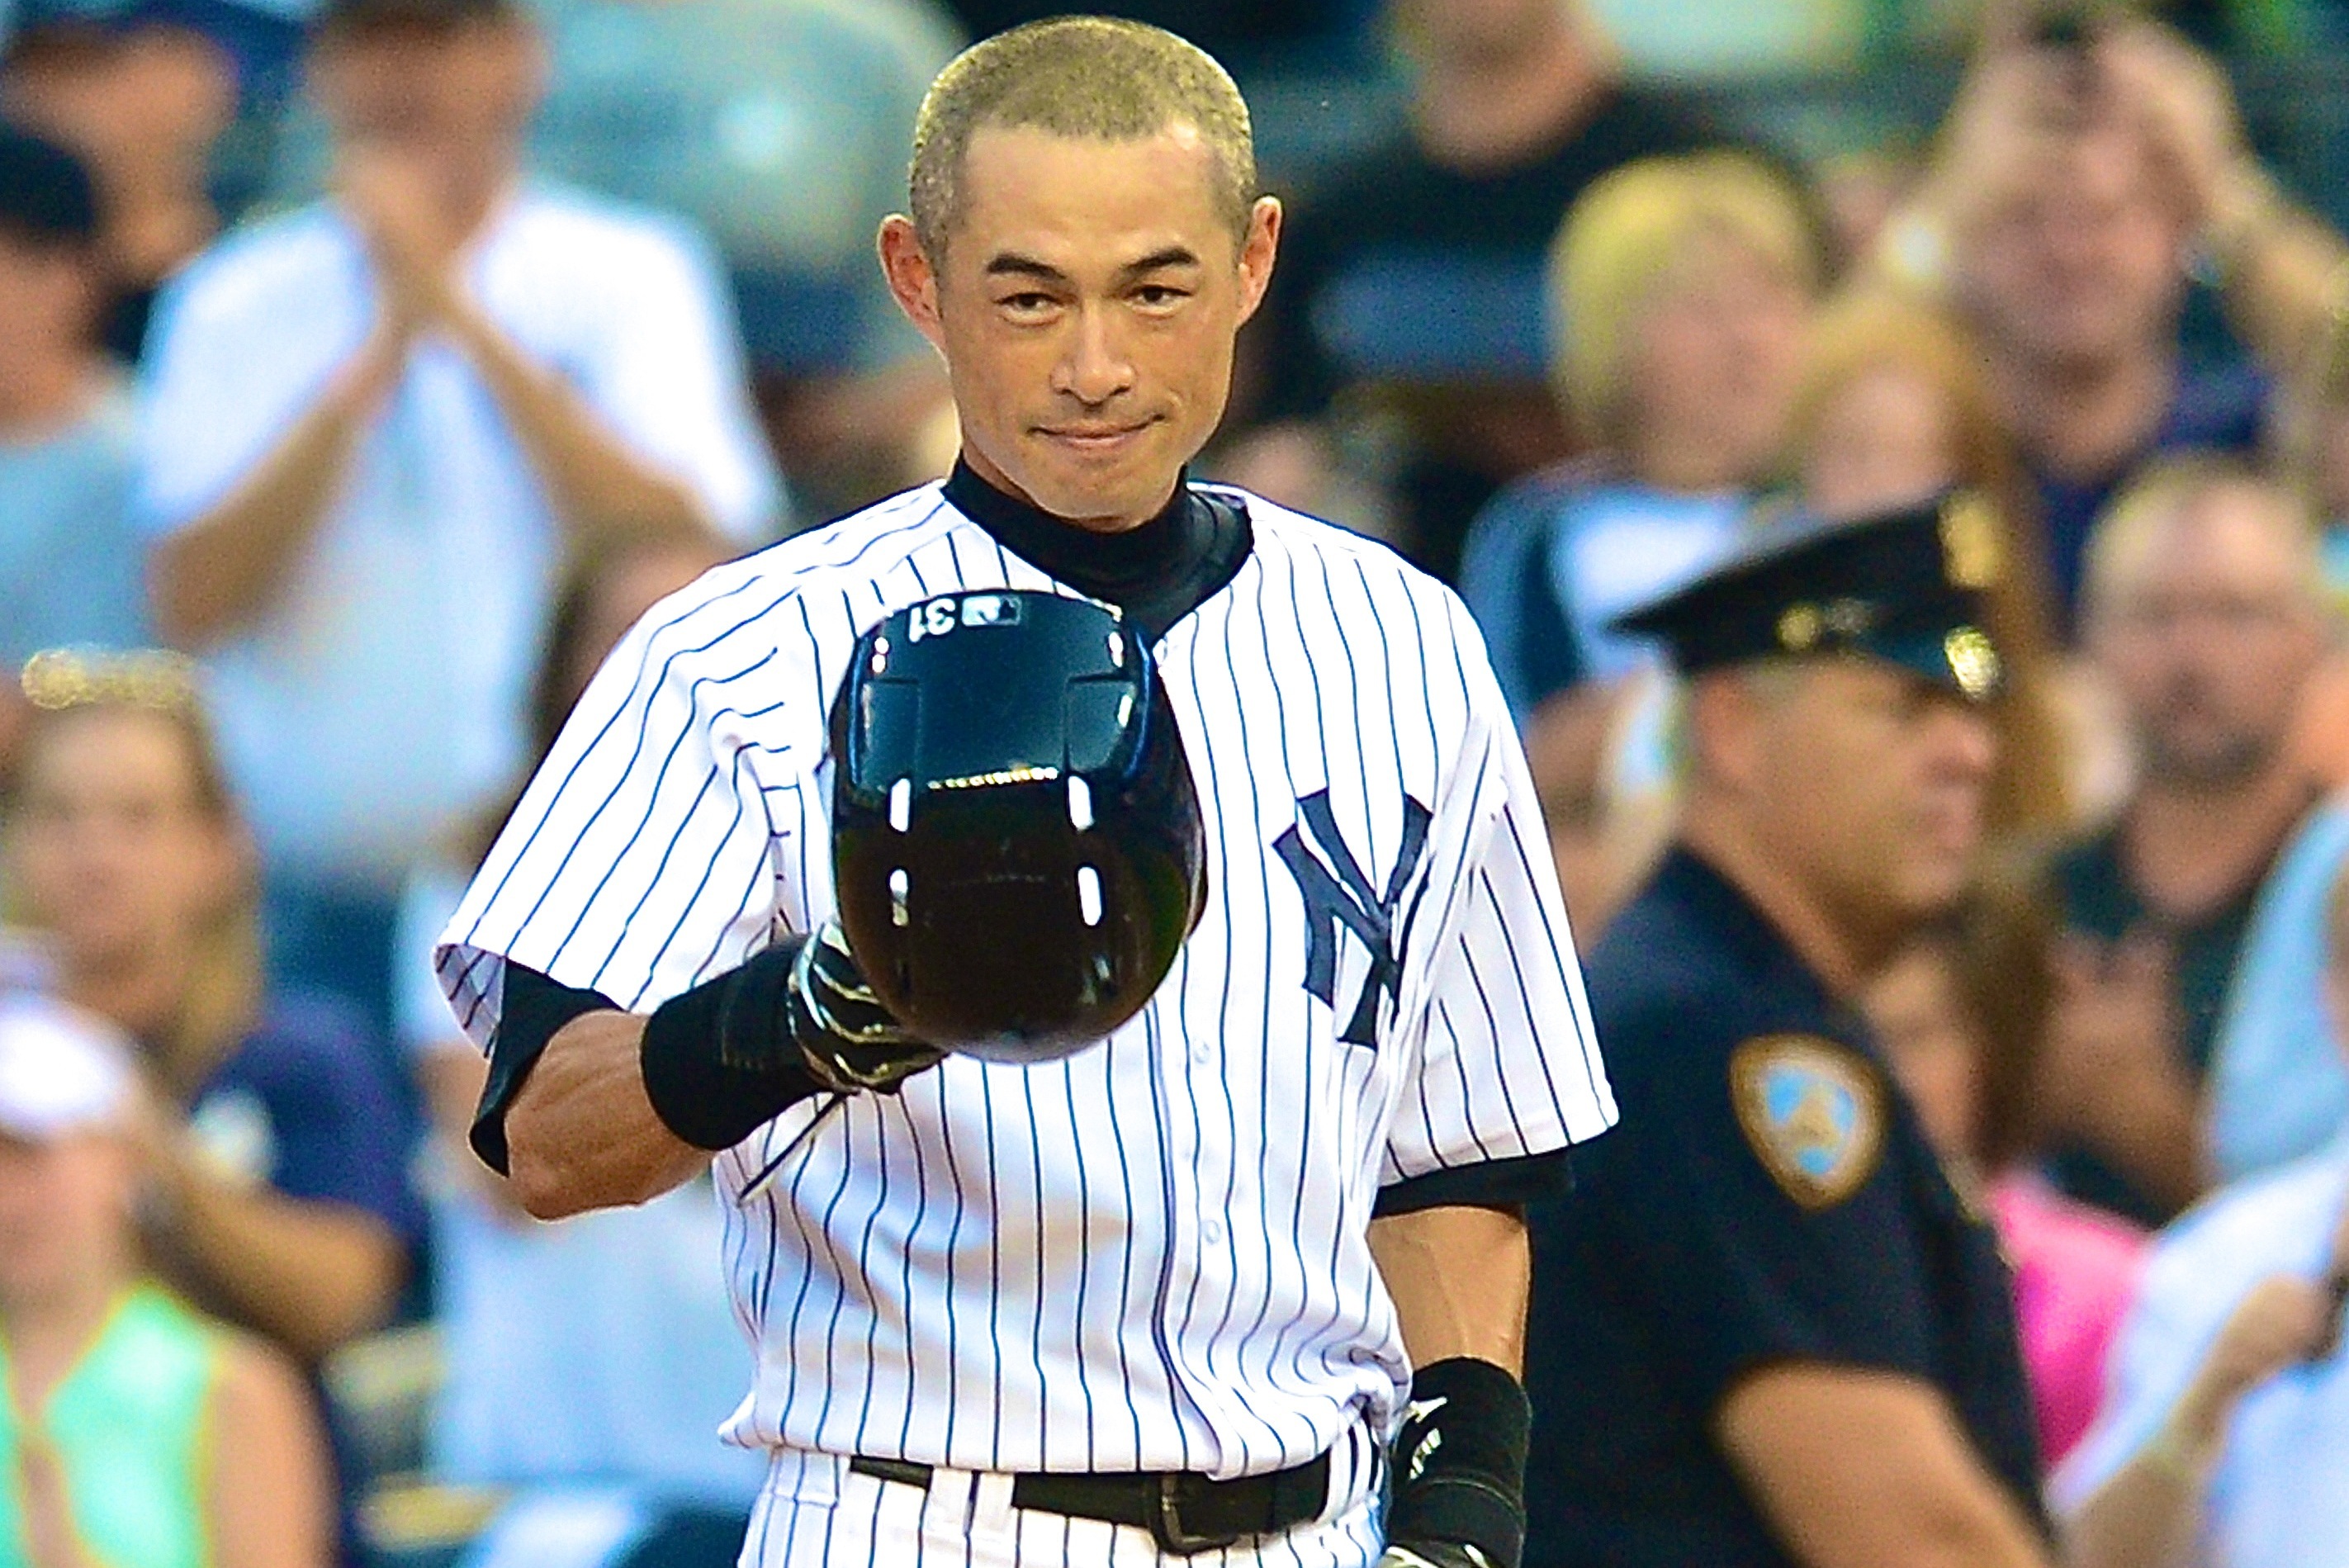 Ichiro Suzuki's historic rookie season